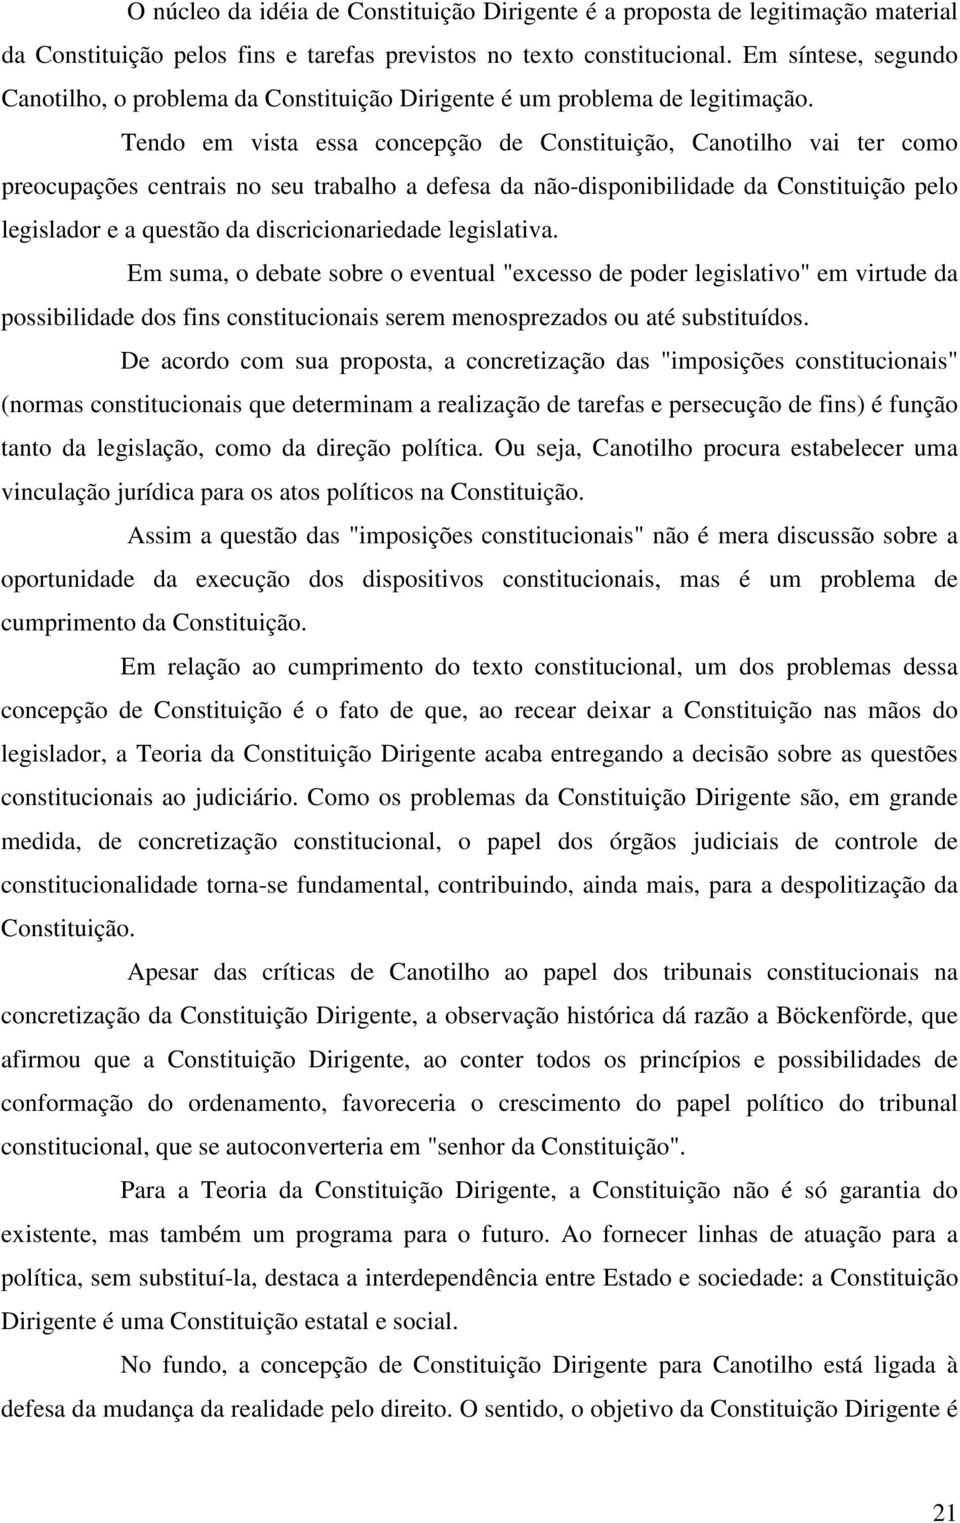 Tendo em vista essa concepção de Constituição, Canotilho vai ter como preocupações centrais no seu trabalho a defesa da não-disponibilidade da Constituição pelo legislador e a questão da